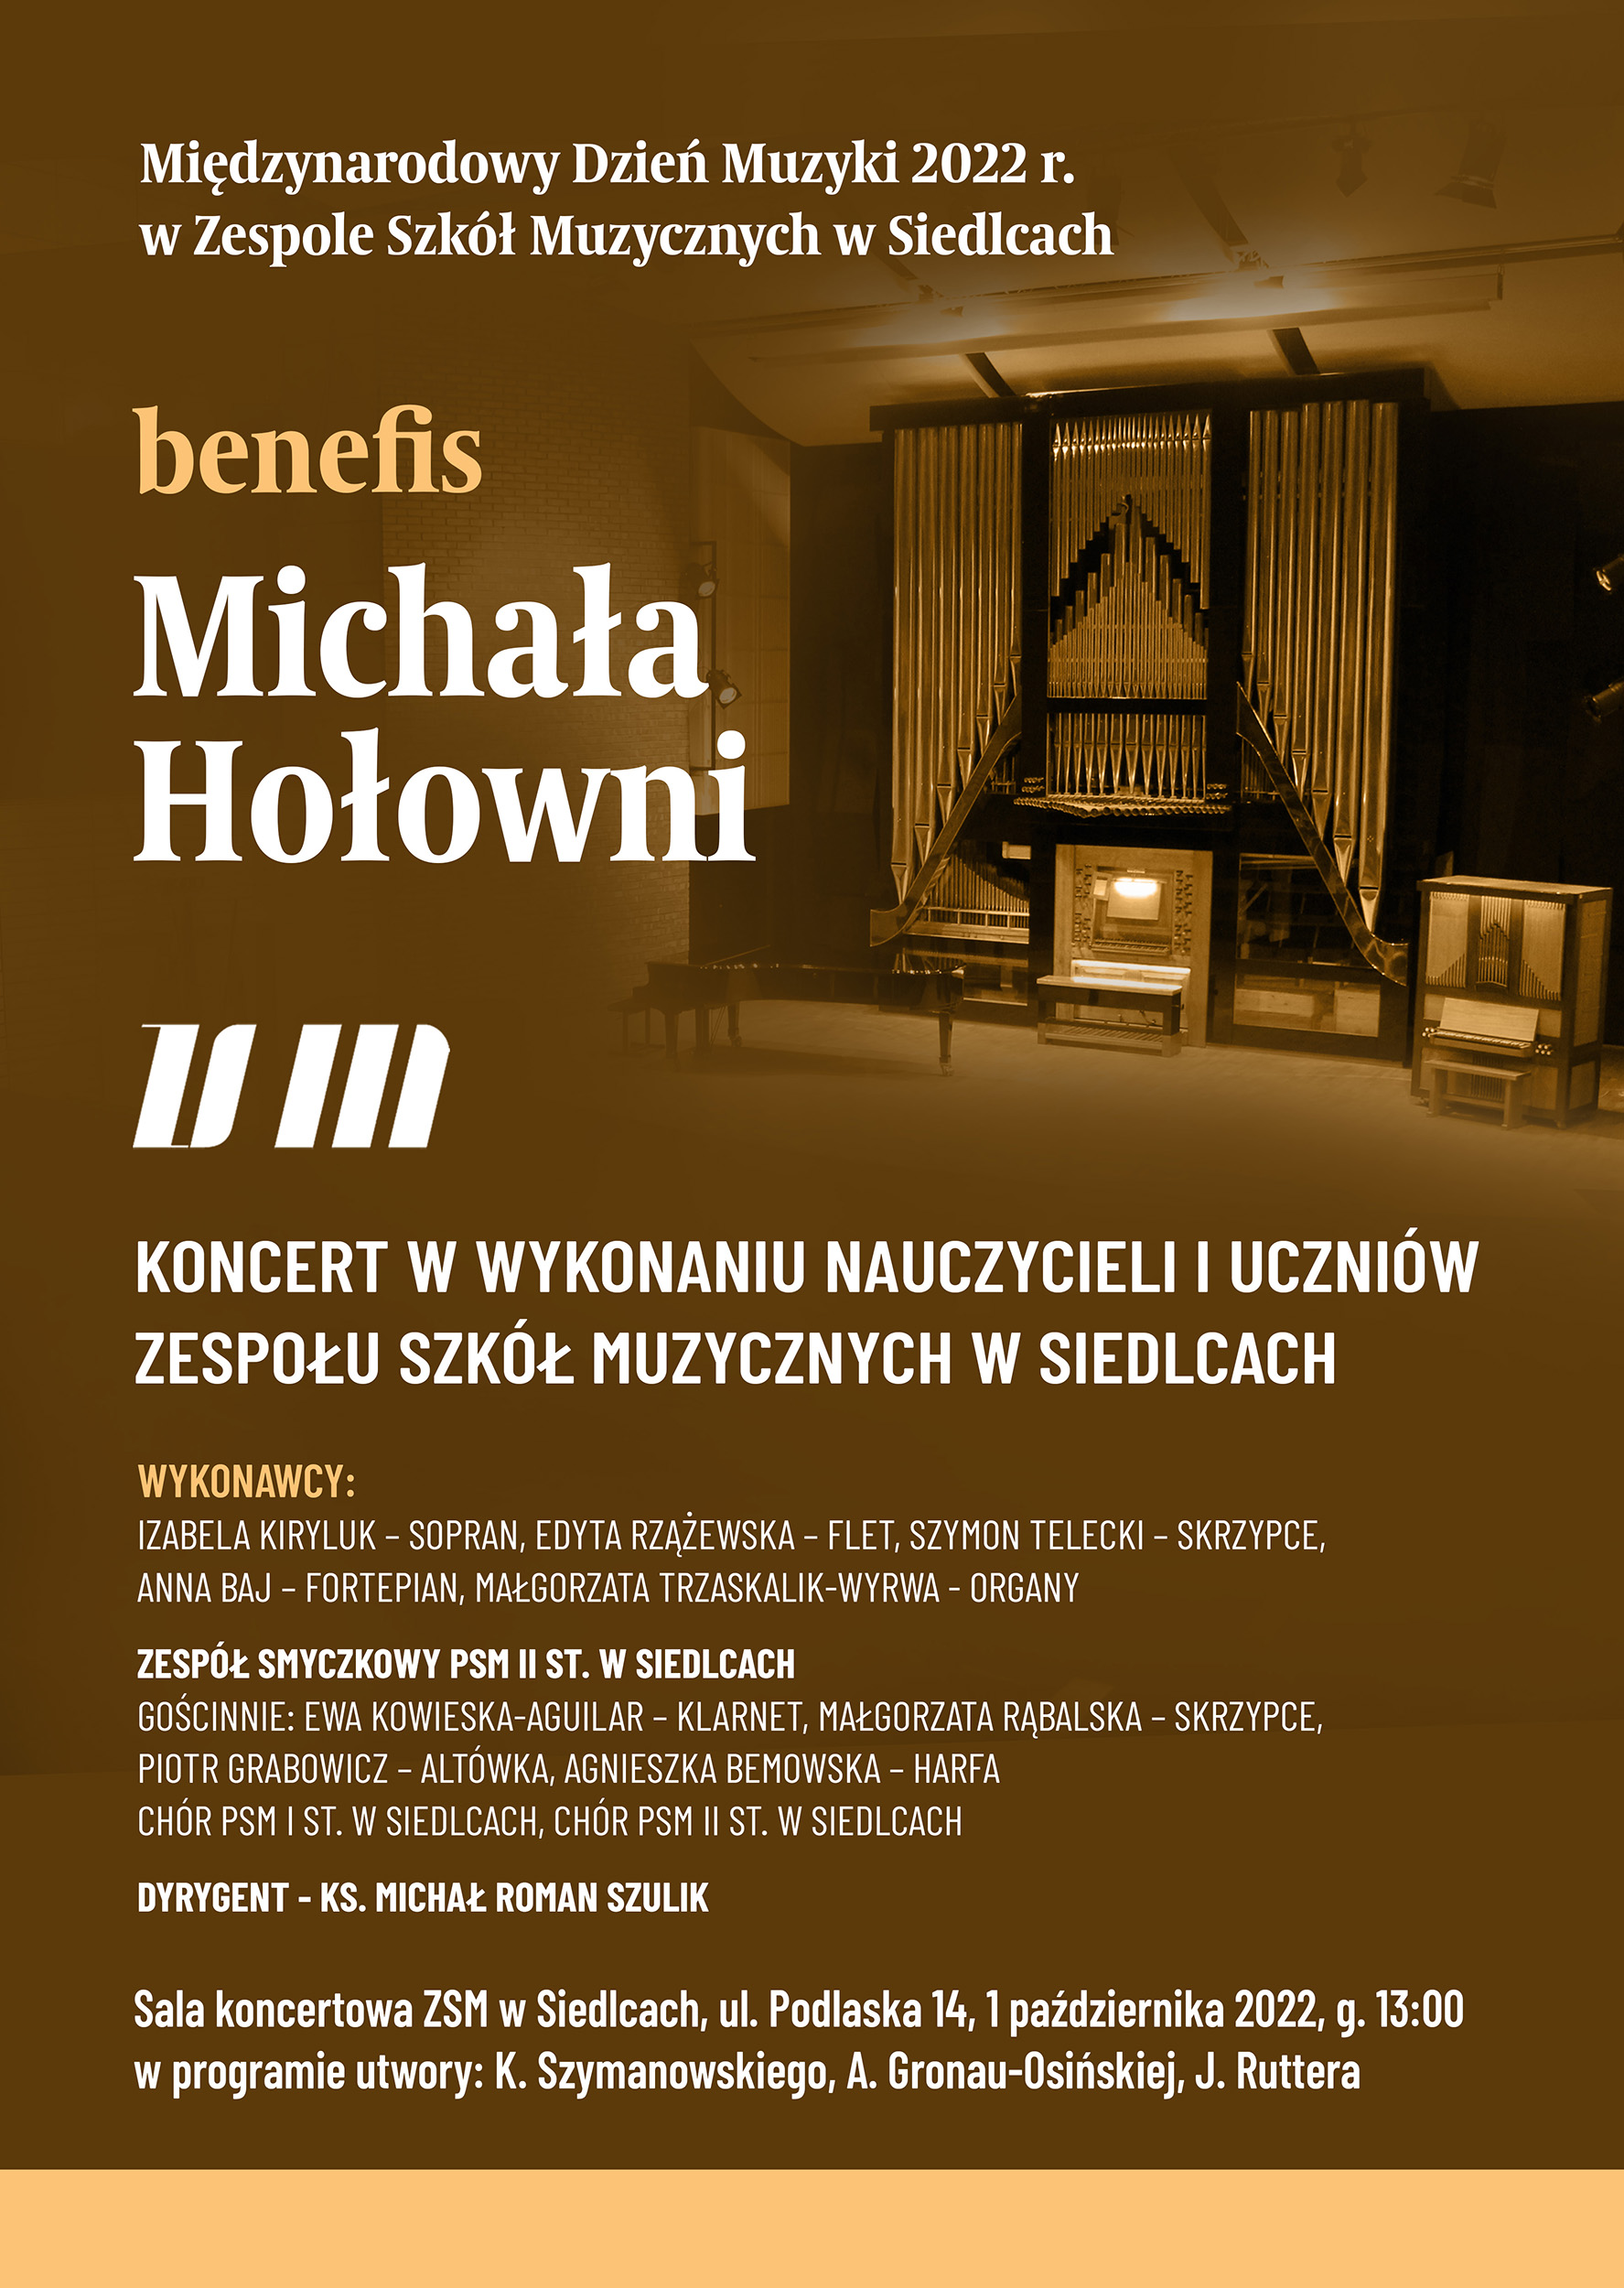 ciemno brązowy plakat z białymi literkami informującymi o benefisie Michała Hołowni w ramach Międzynarodowego Dnia Muzyki, na górze po prawej stronie widok oorganów mieszczących się w sali koncertowej, na dole pomarańczowa gruba linia